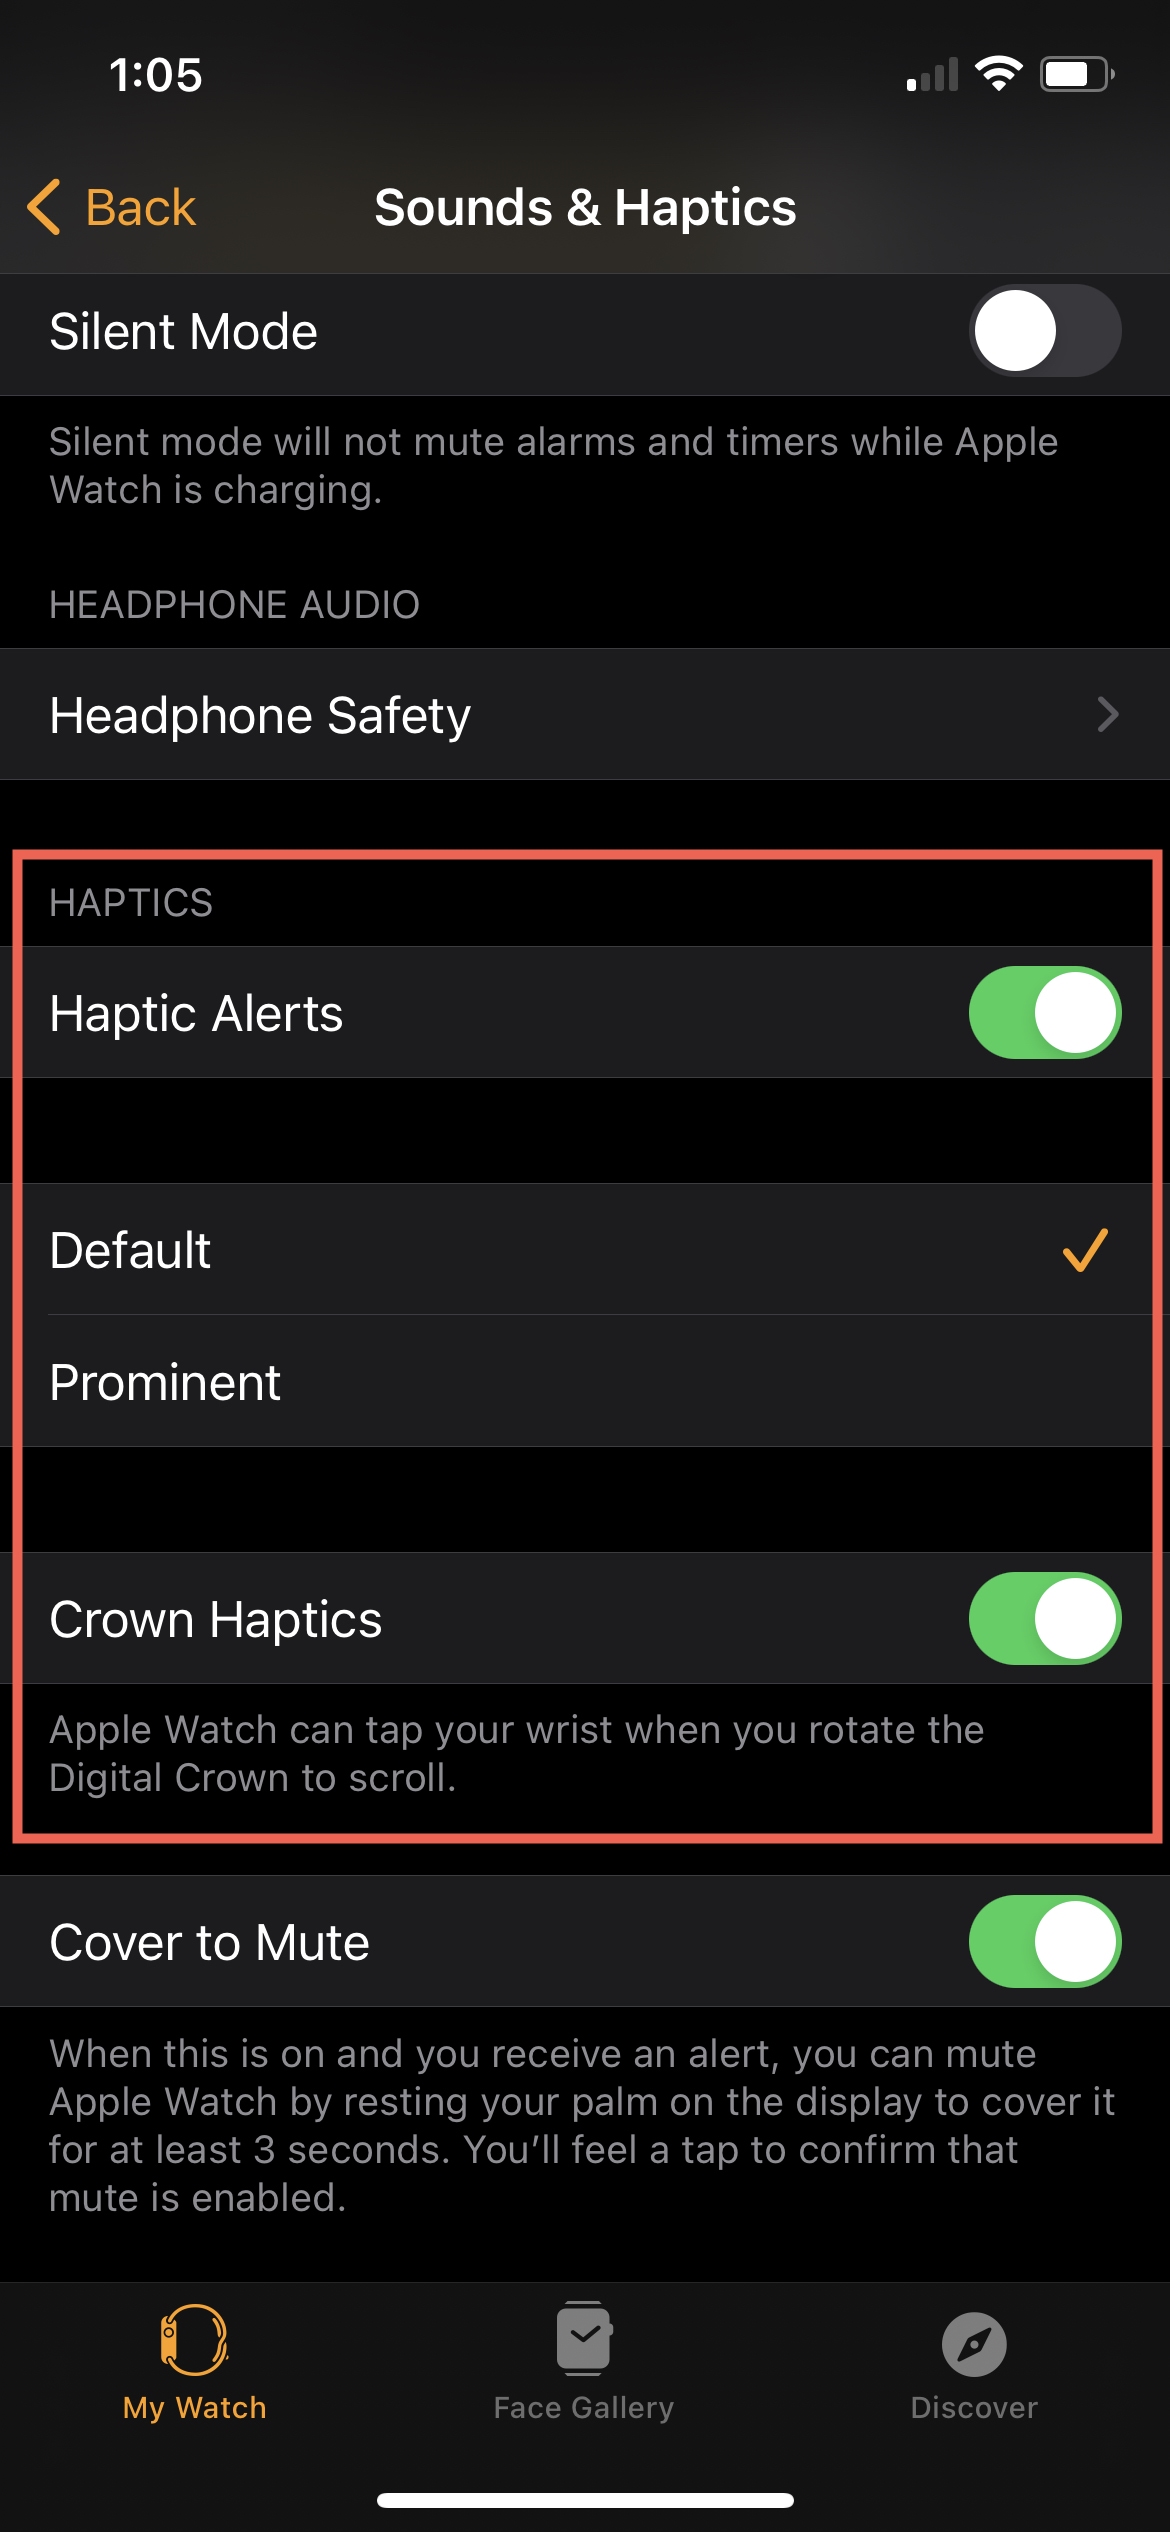 Avvisi aptici predefiniti in Watch su iPhone